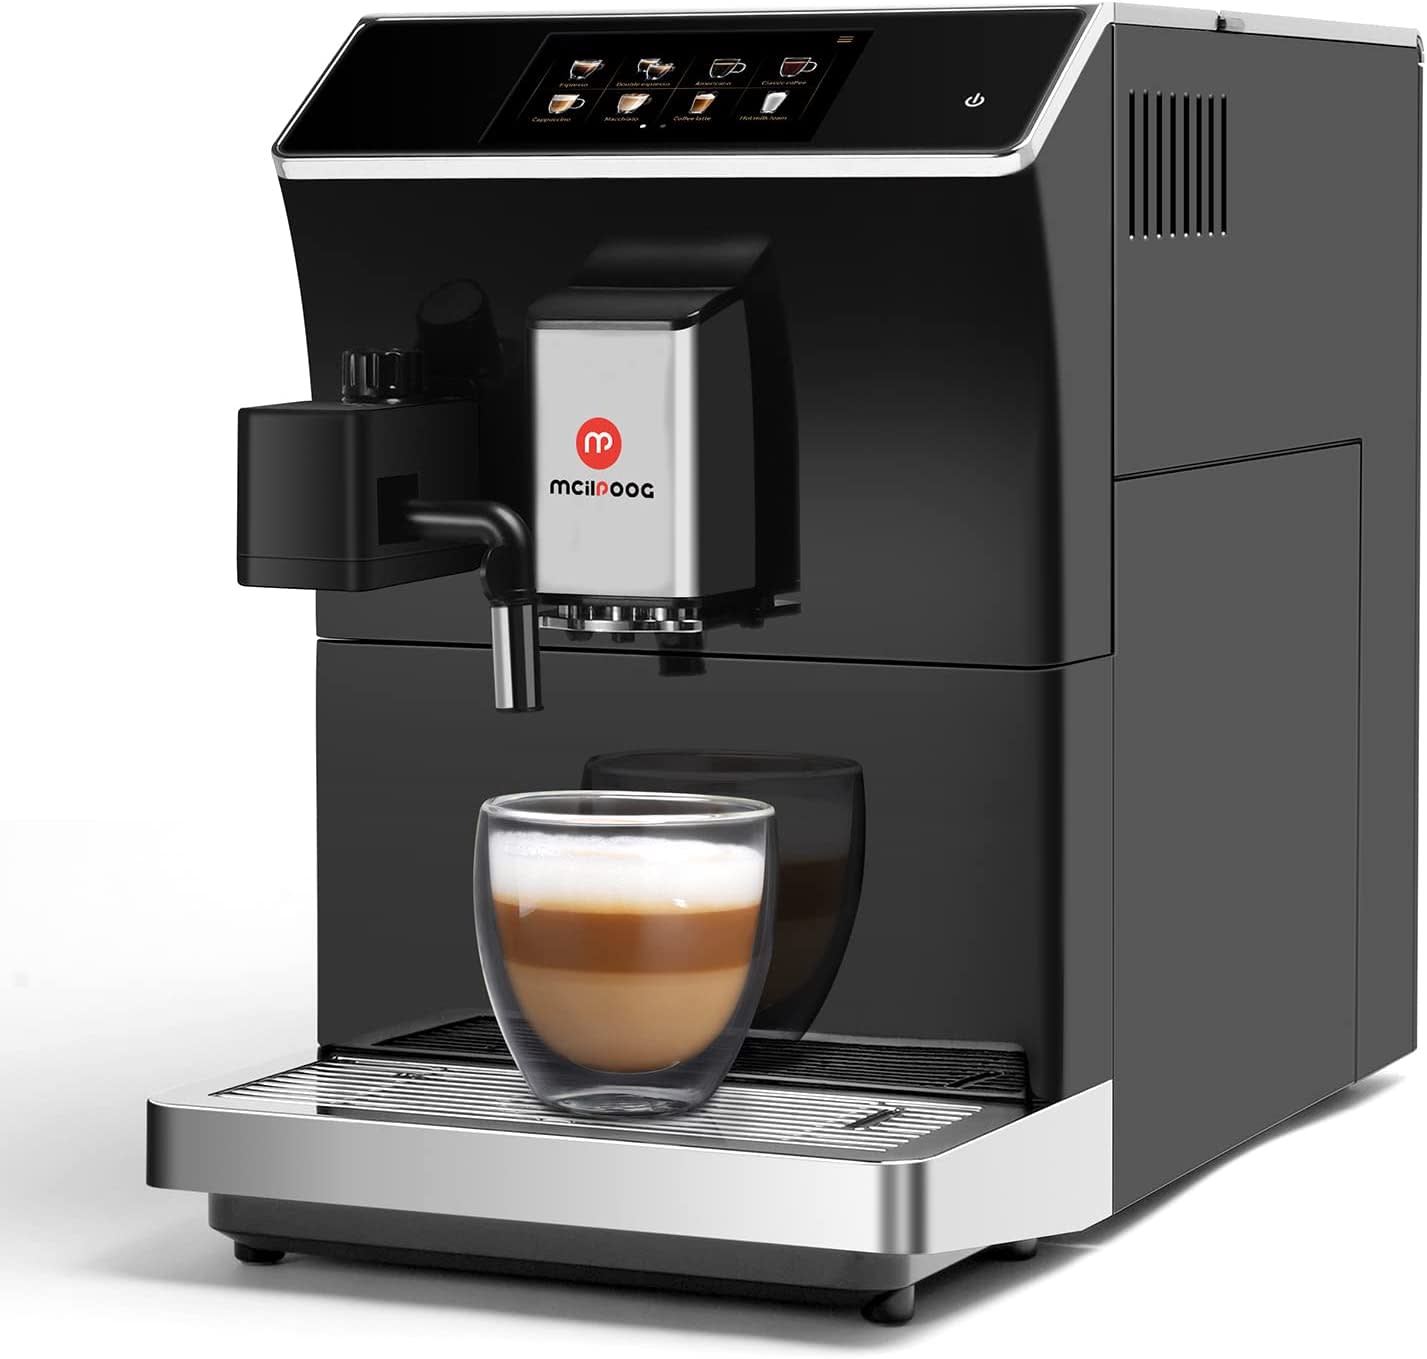 Mcilpoog Coffee Machine